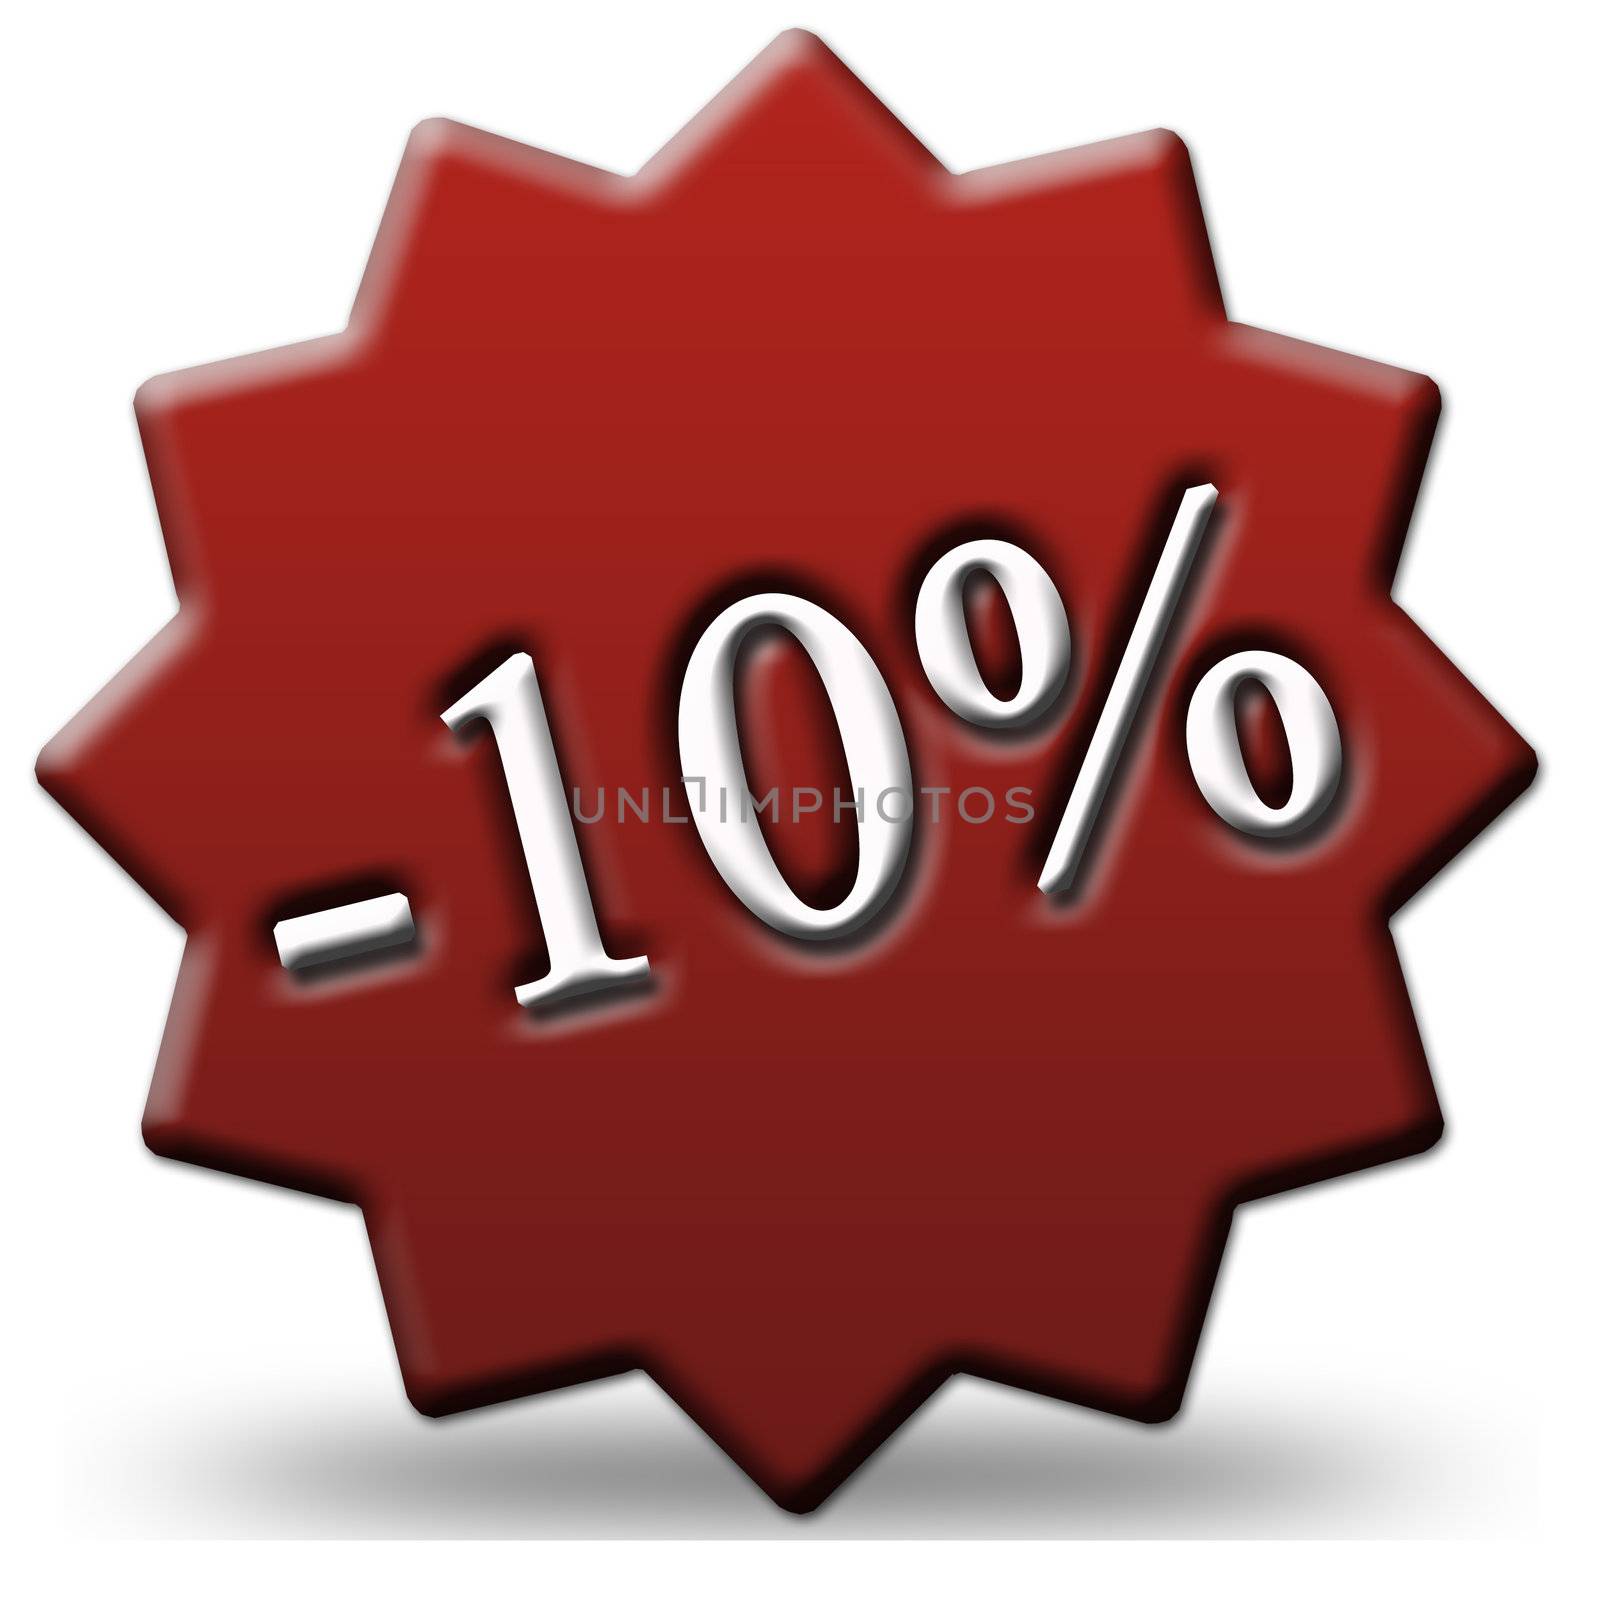 10 percent off by shawlinmohd